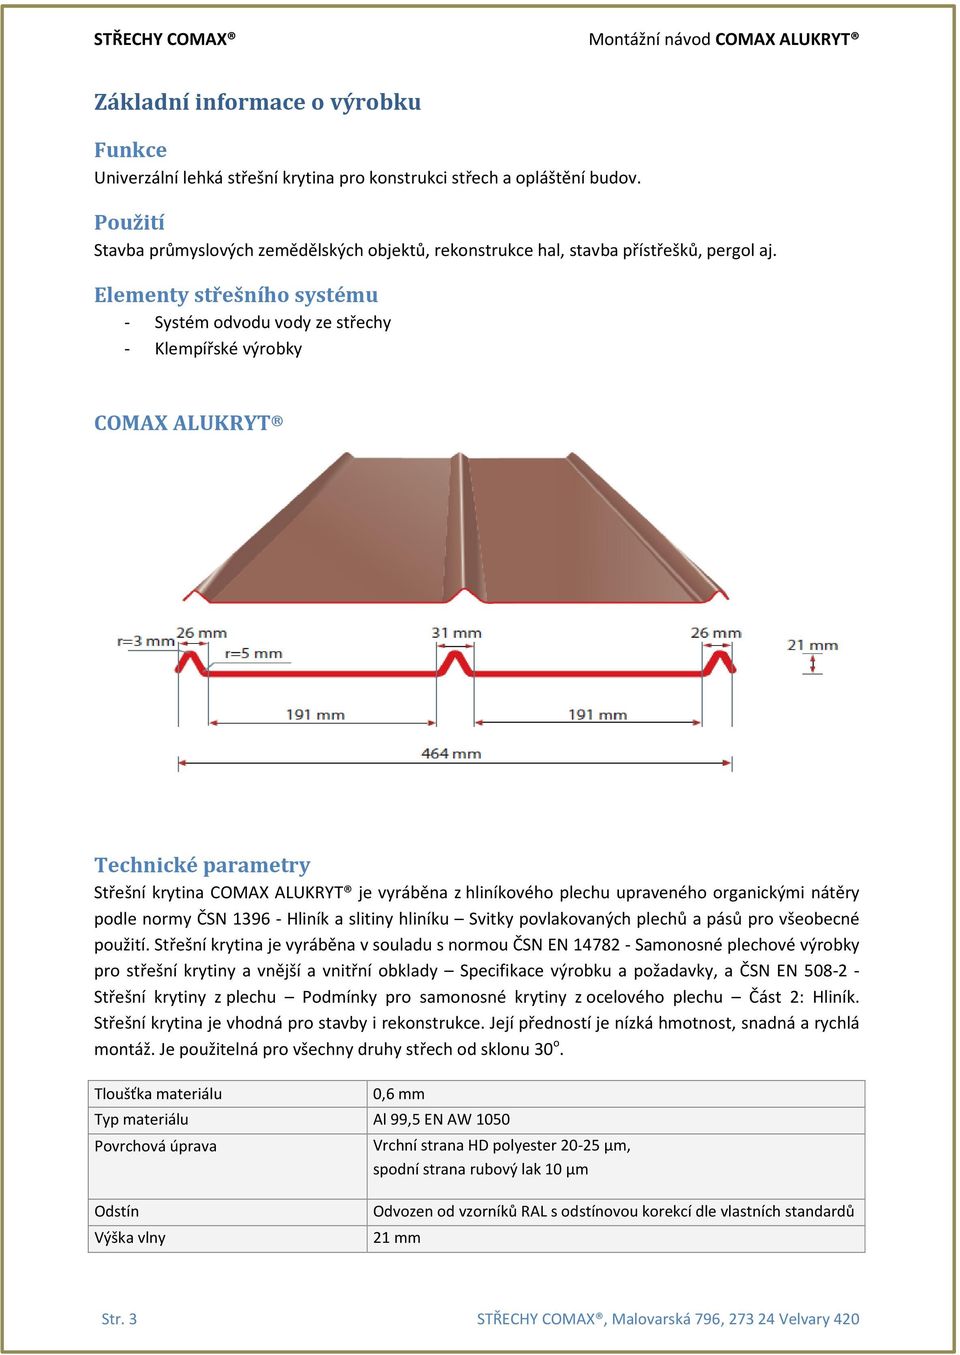 Elementy střešního systému - Systém odvodu vody ze střechy - Klempířské výrobky COMAX ALUKRYT Technické parametry Střešní krytina COMAX ALUKRYT je vyráběna z hliníkového plechu upraveného organickými